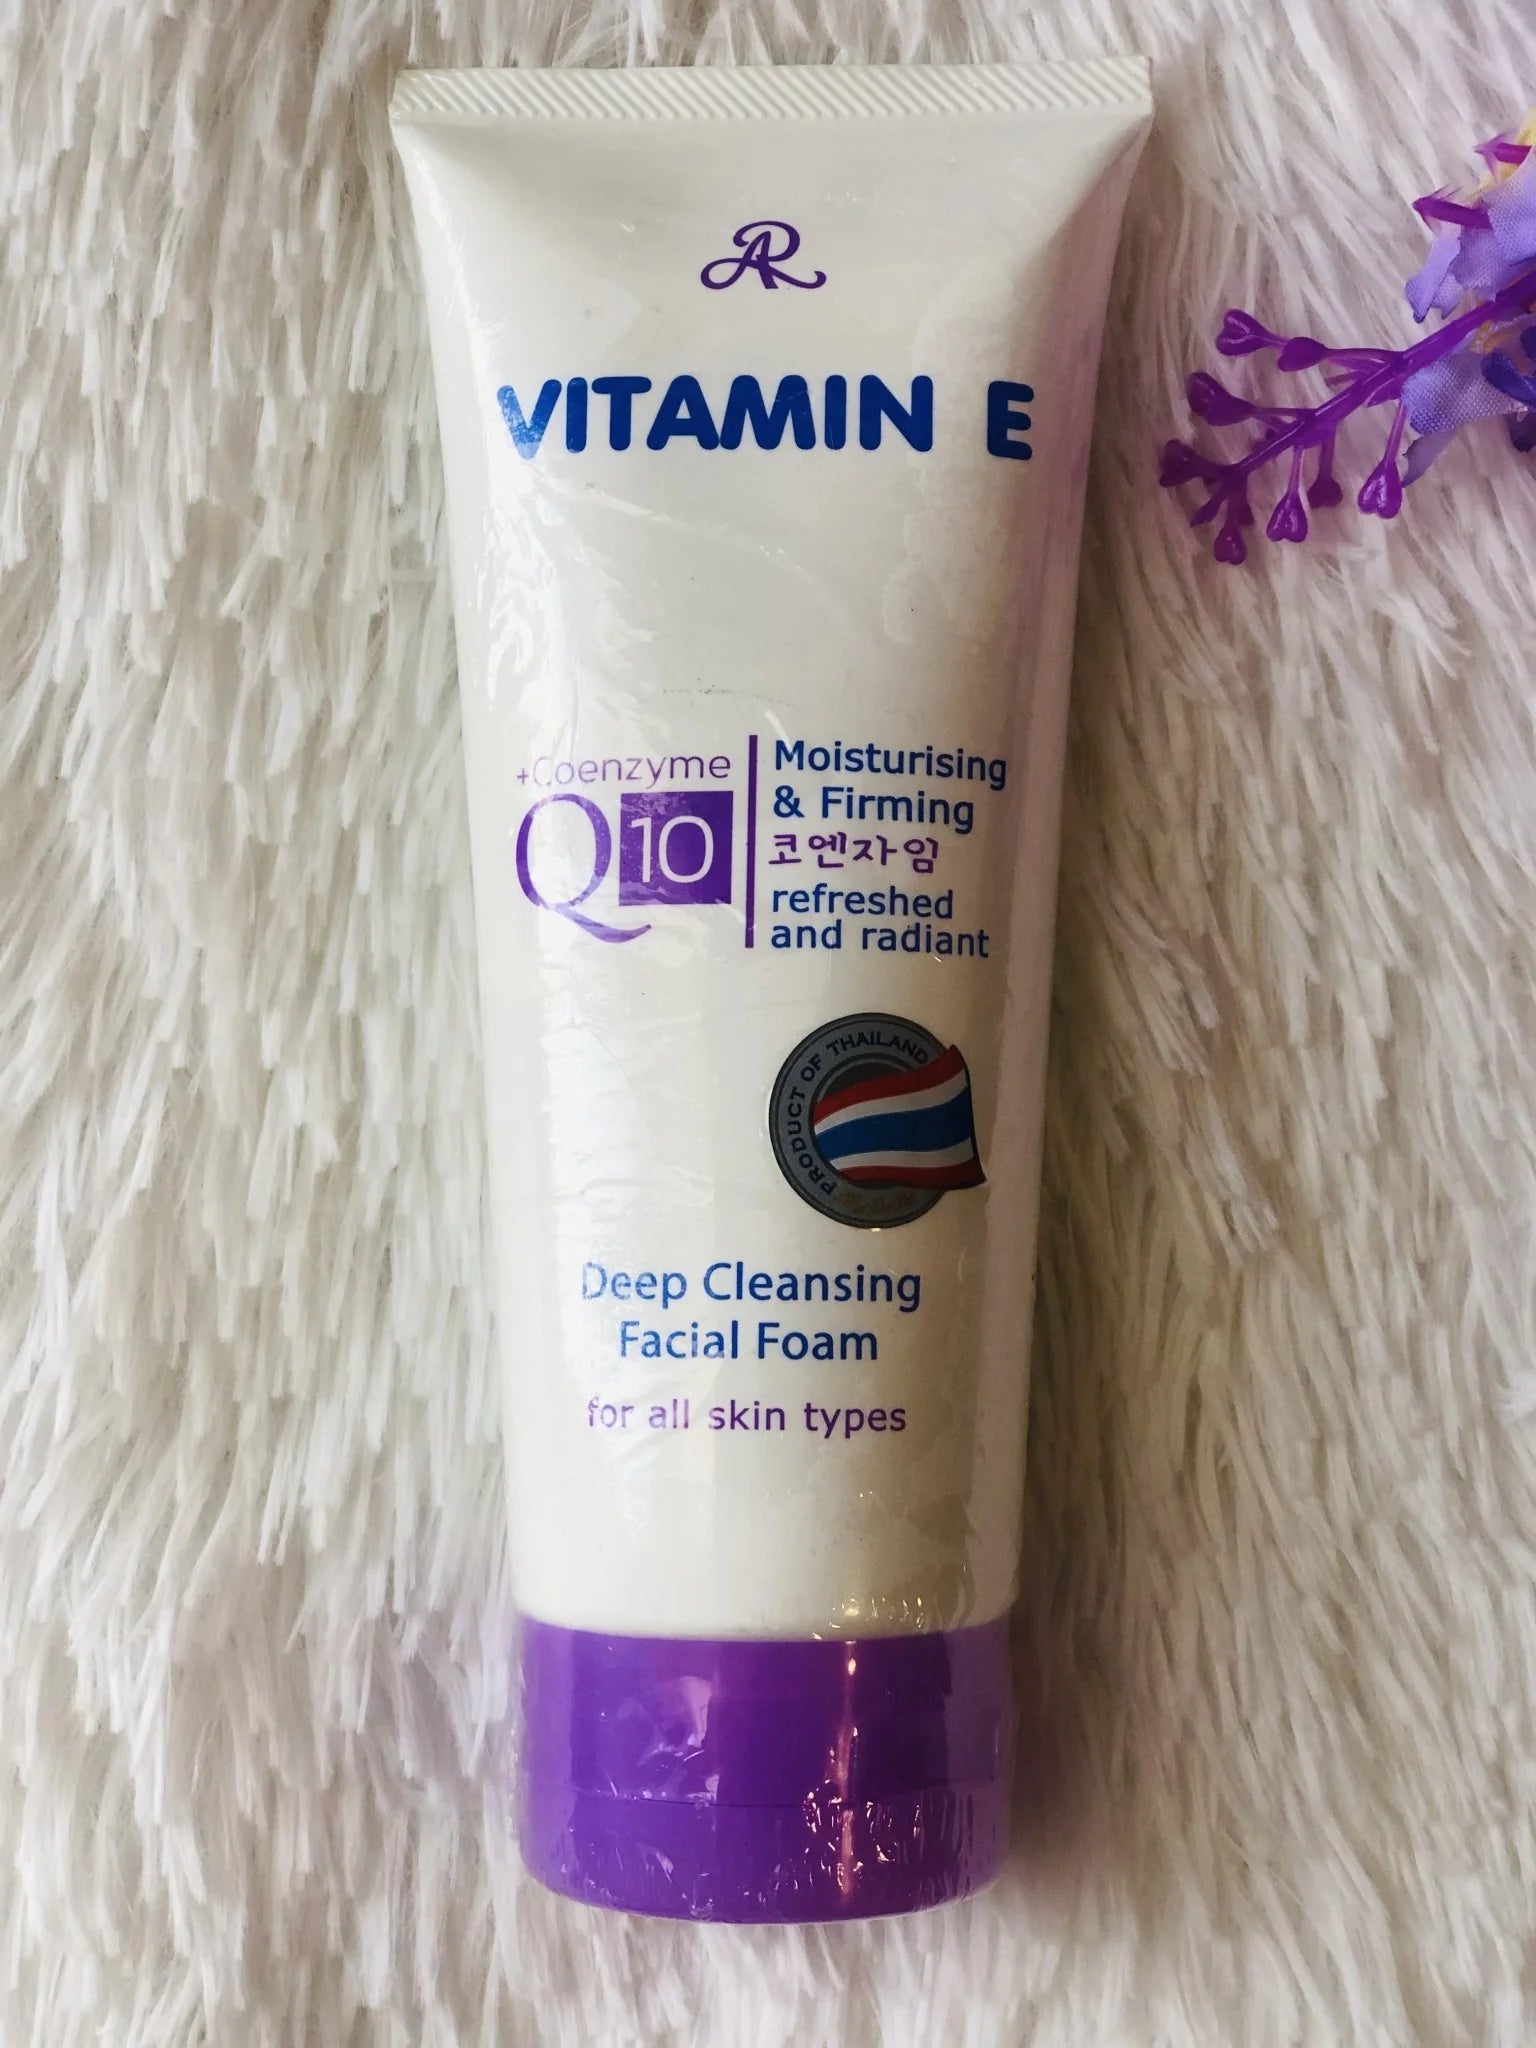 AR Vitamin E Coenzyme Q10 Moisturising & Firming Deep Cleansing Facial Foam 